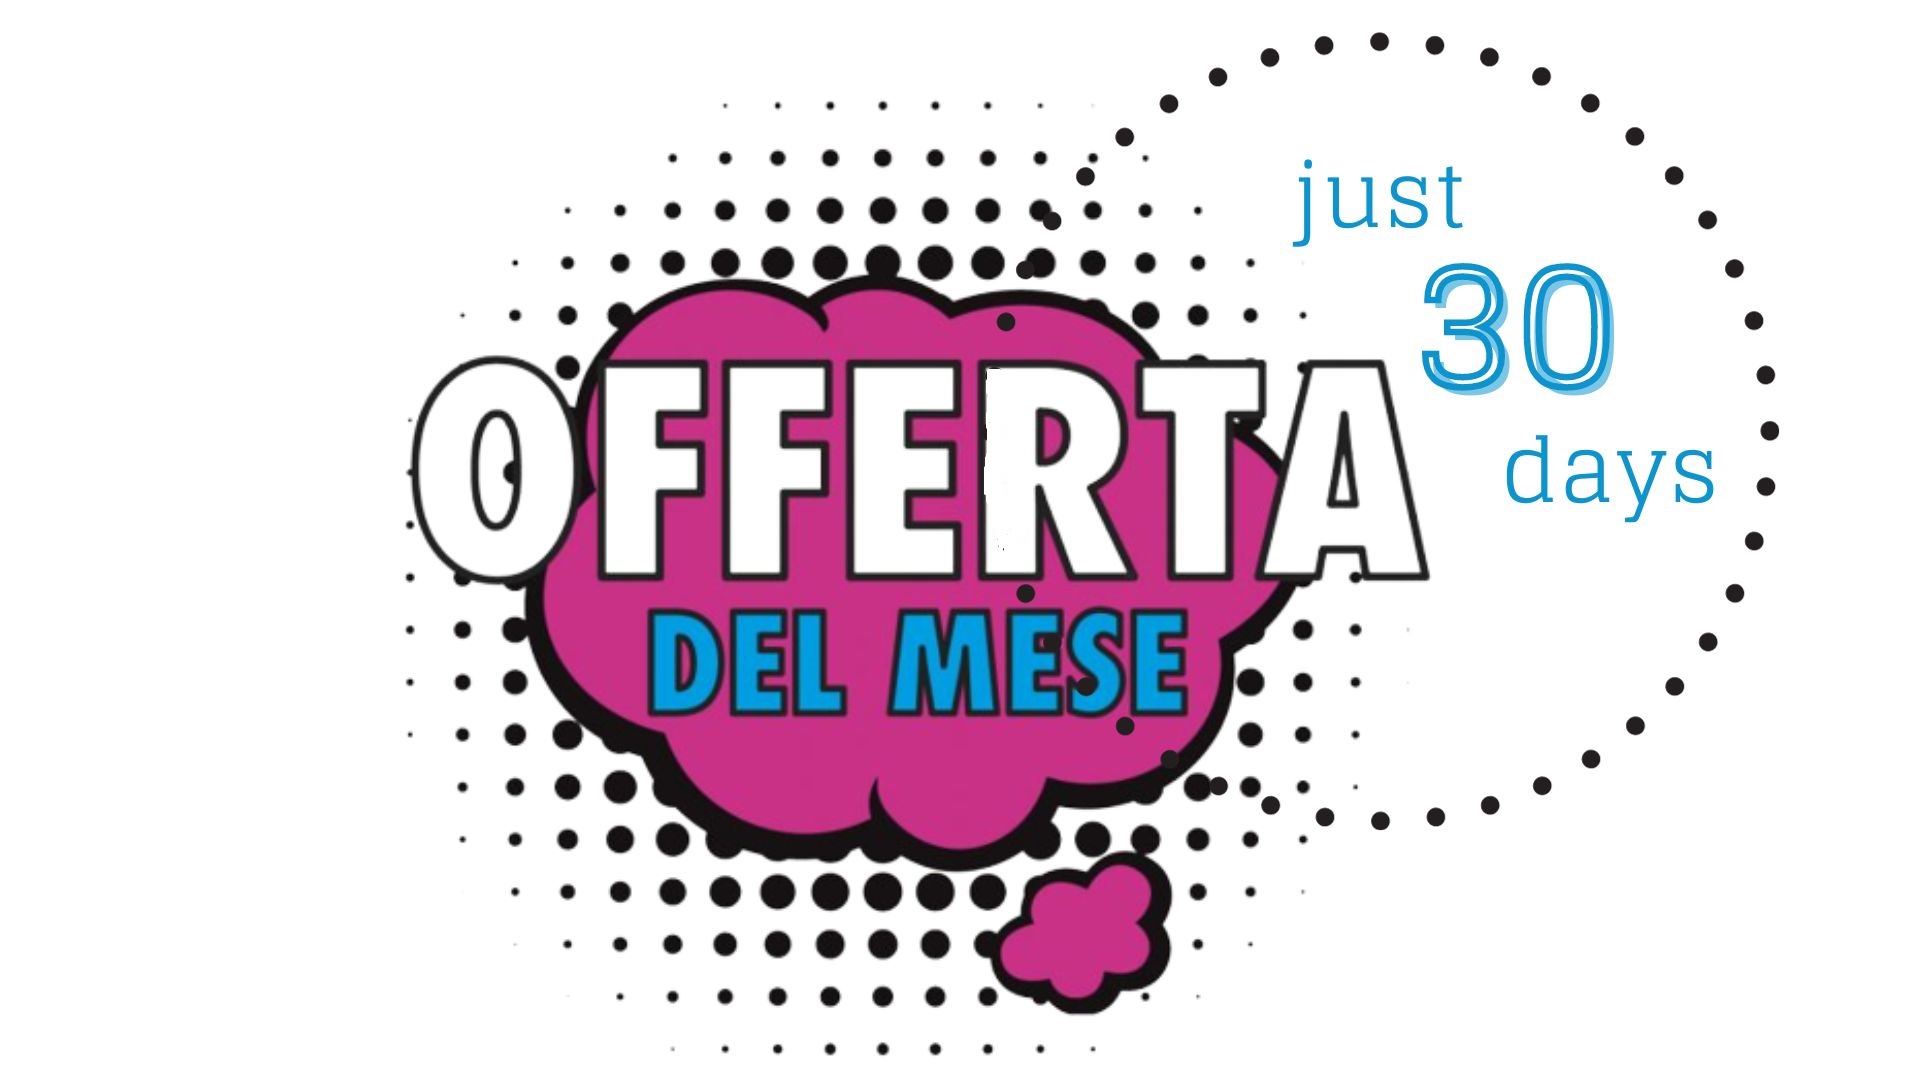 OFFERTA del MESE / OFFERTA della SETTIMANA / OFFERTA One DAY